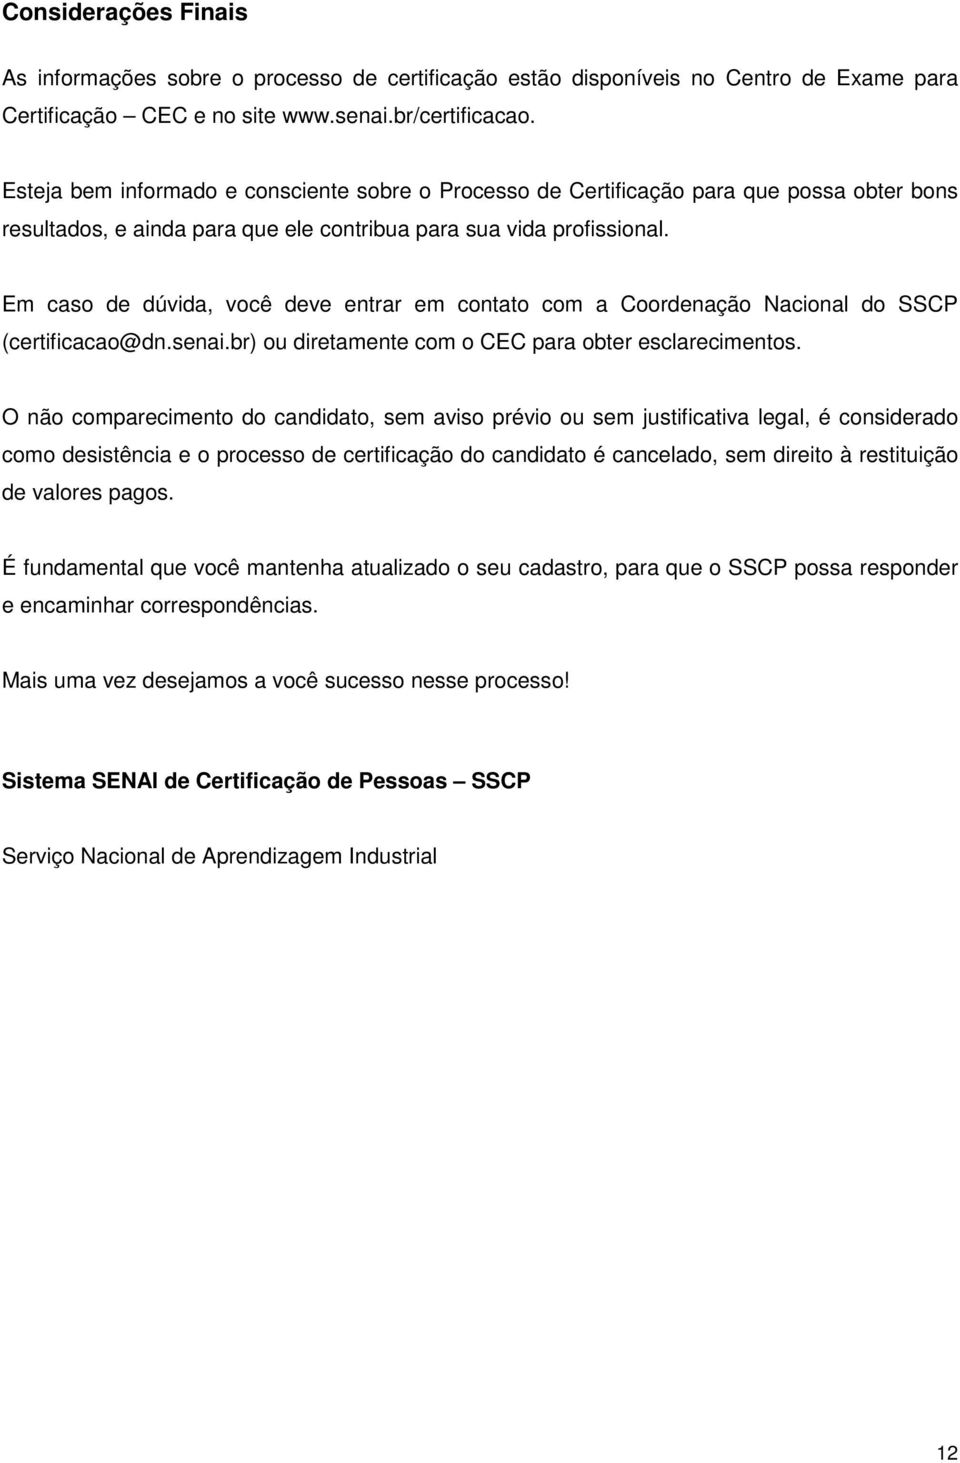 Em caso de dúvida, você deve entrar em contato com a Coordenação Nacional do SSCP (certificacao@dn.senai.br) ou diretamente com o CEC para obter esclarecimentos.